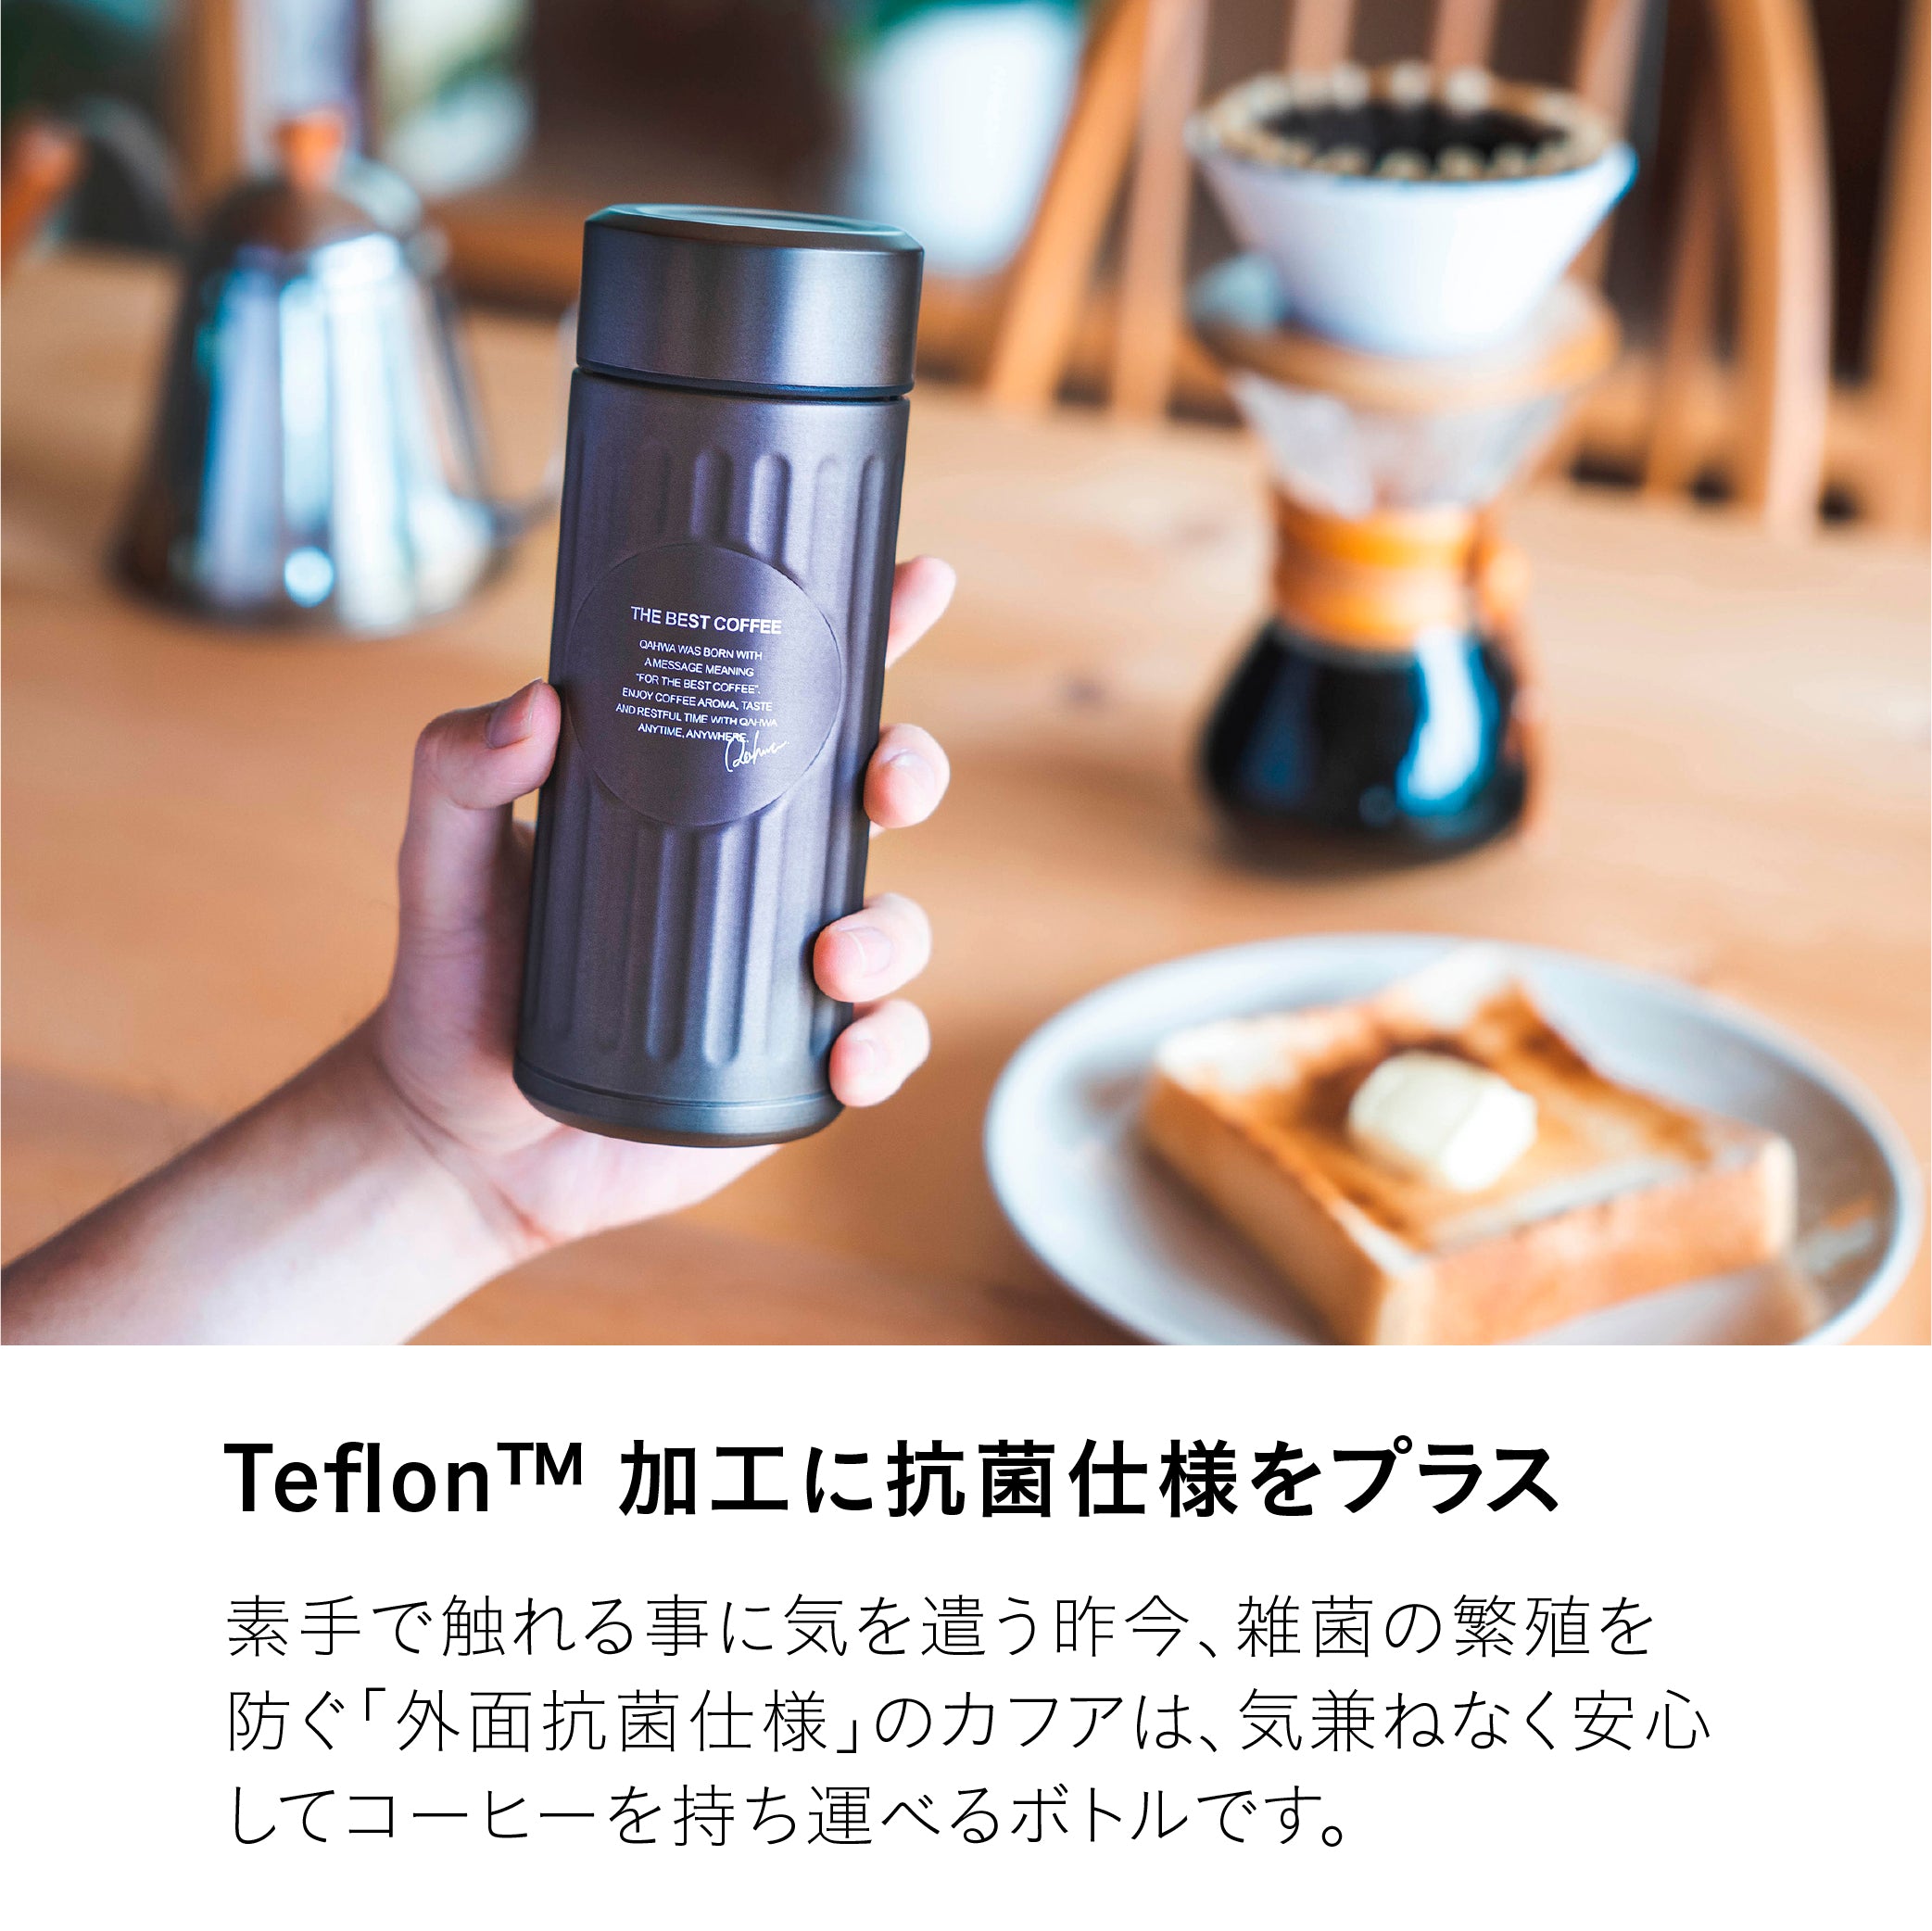 抗菌カフアコーヒーボトル 420ml – シービージャパン オンラインストア